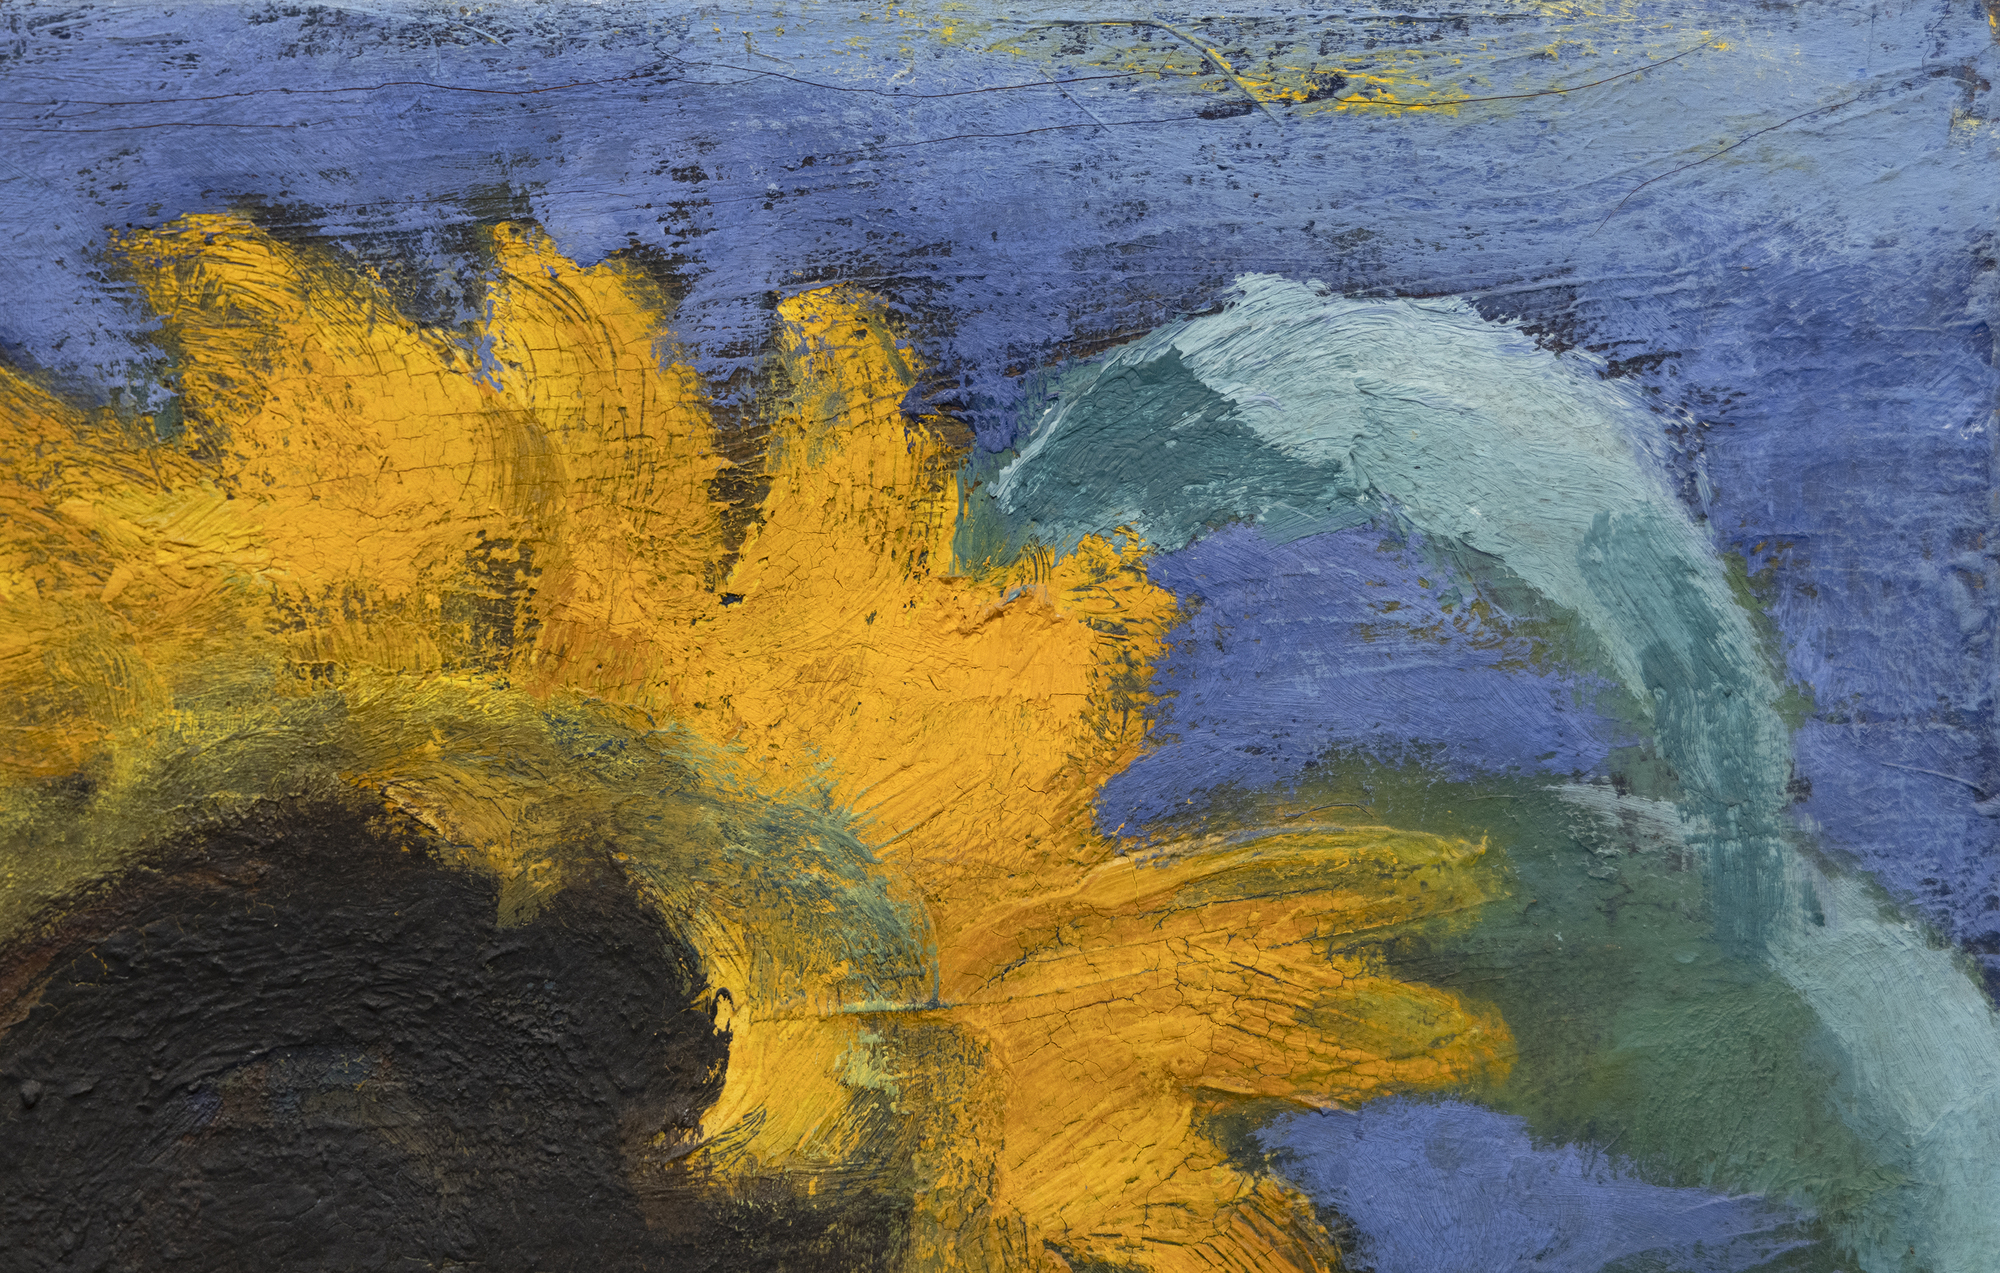 EMIL NOLDE - Sonnenblumen, Abend II - óleo sobre lienzo - 26 1/2 x 35 3/8 in.